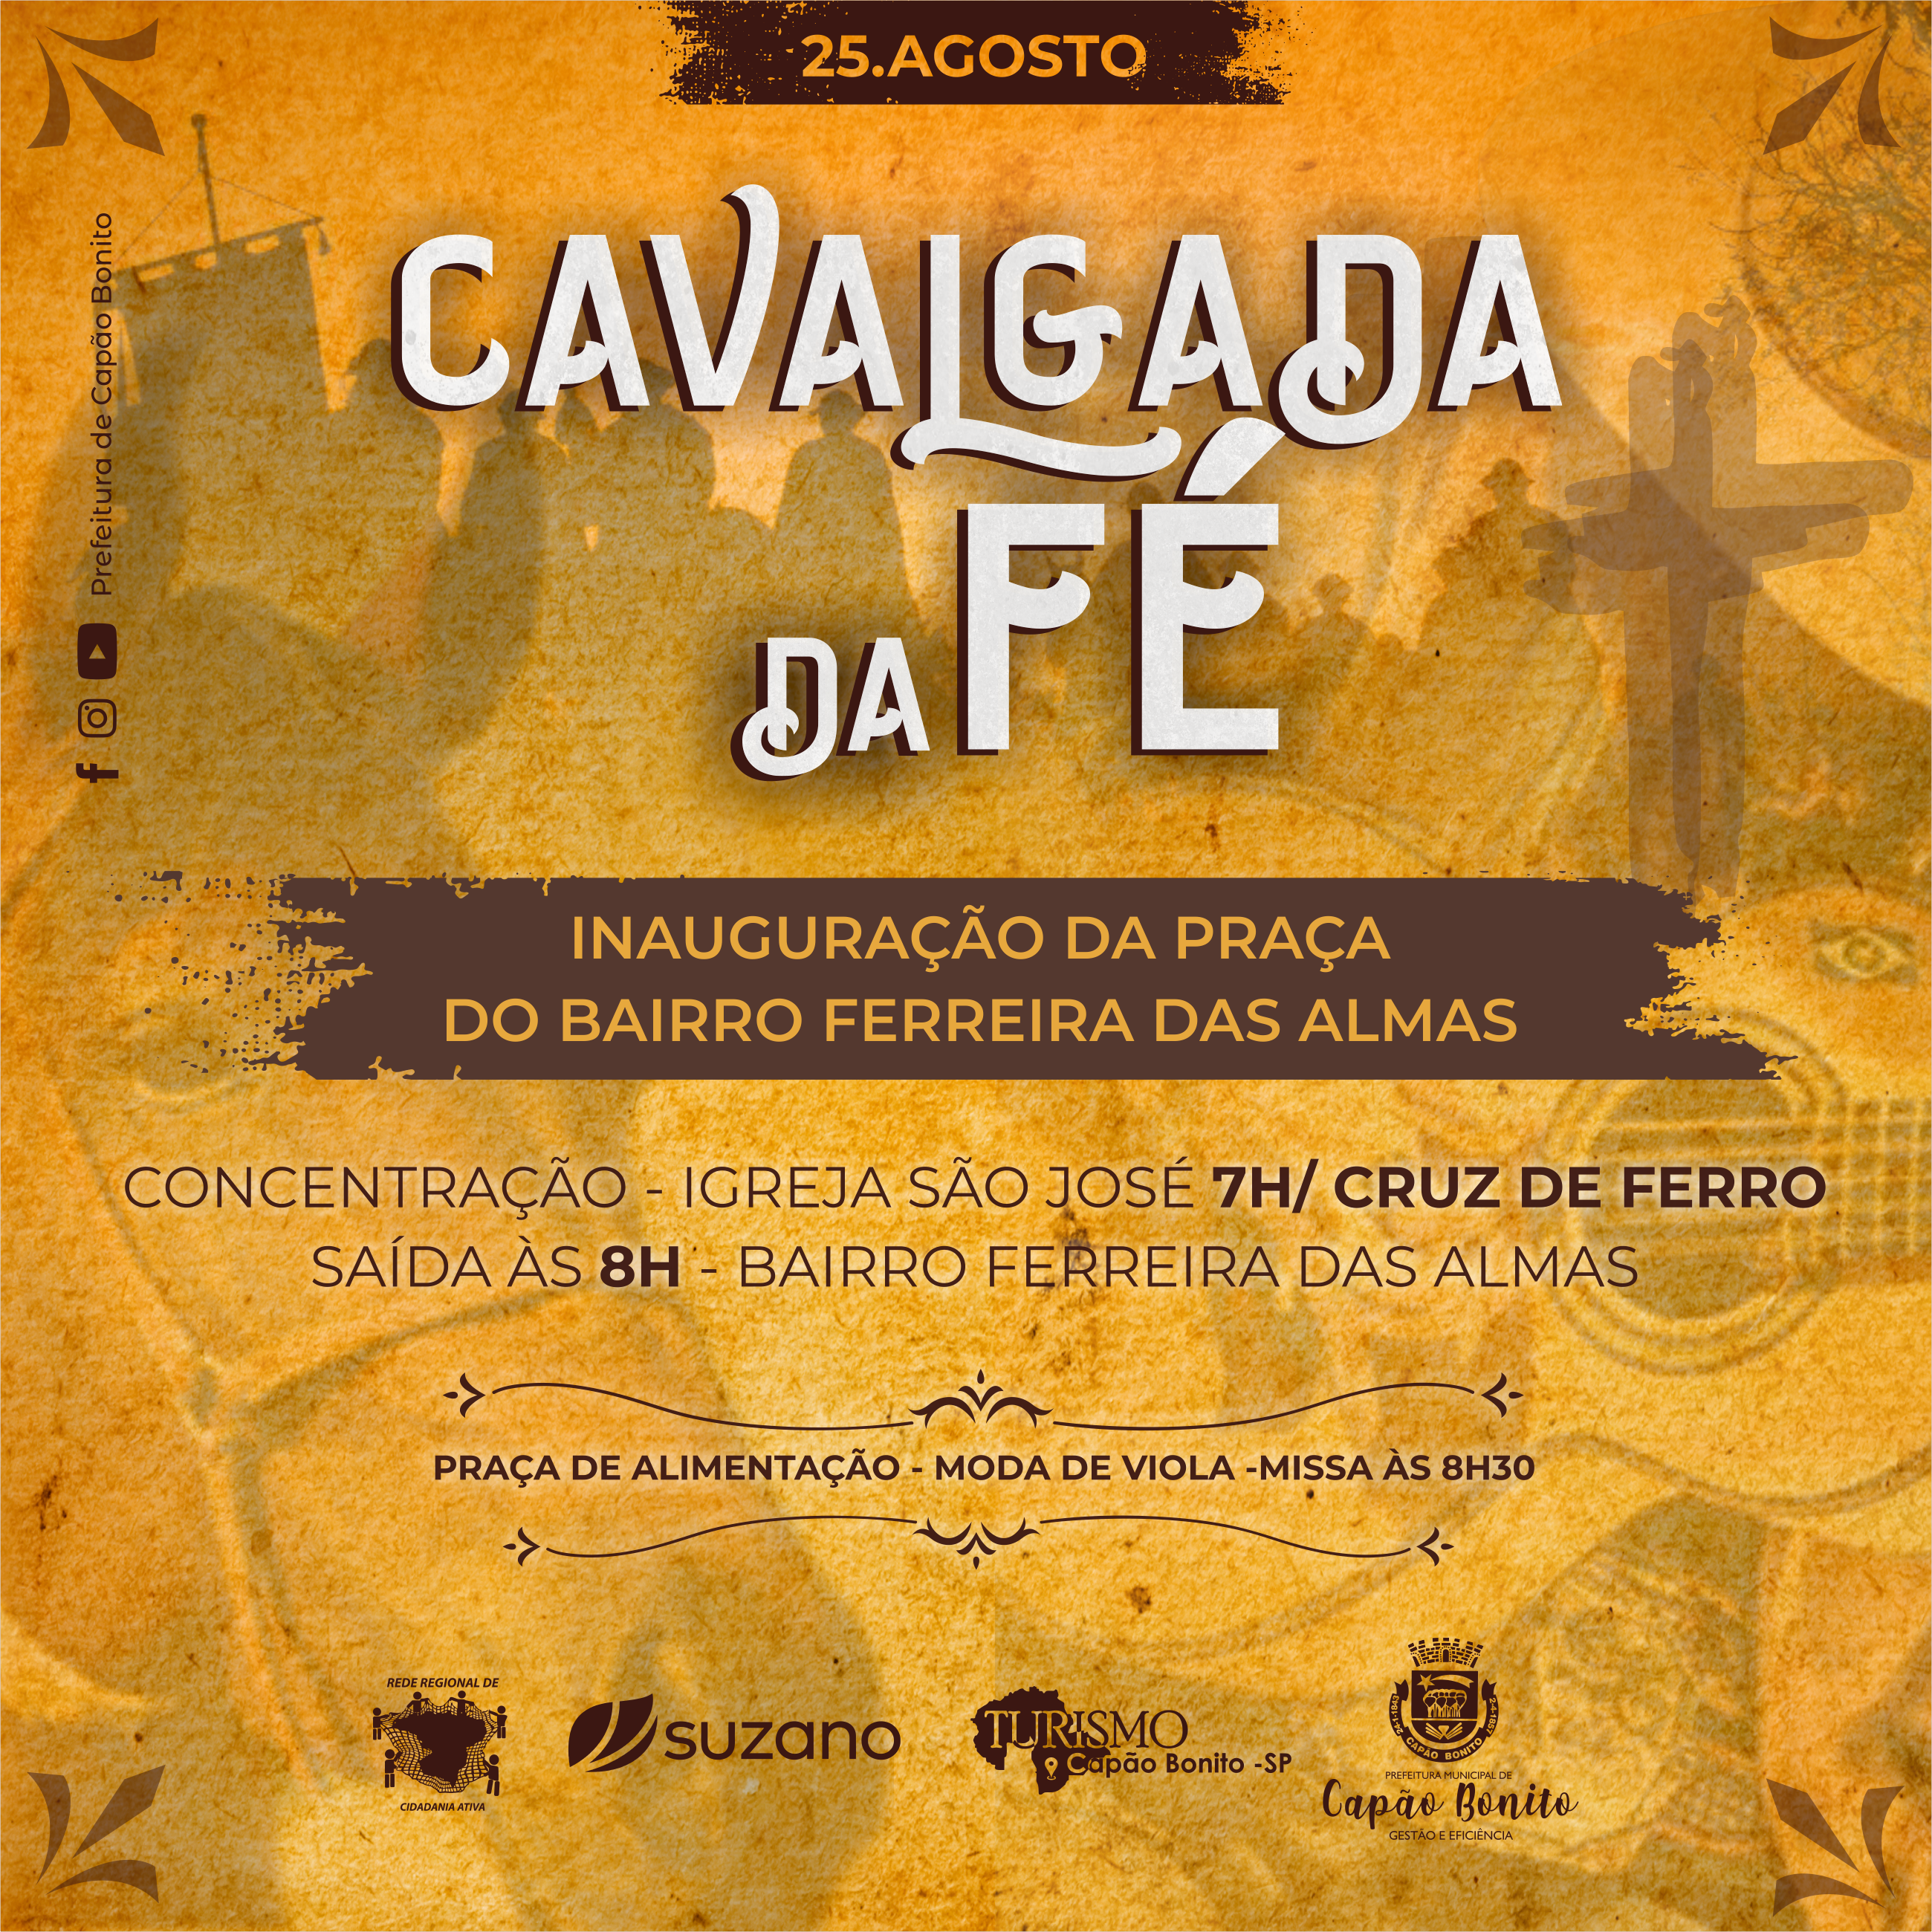 1º Festival de Xadrez de Capão Bonito acontecerá neste fim de semana –  Prefeitura Municipal de Capão Bonito